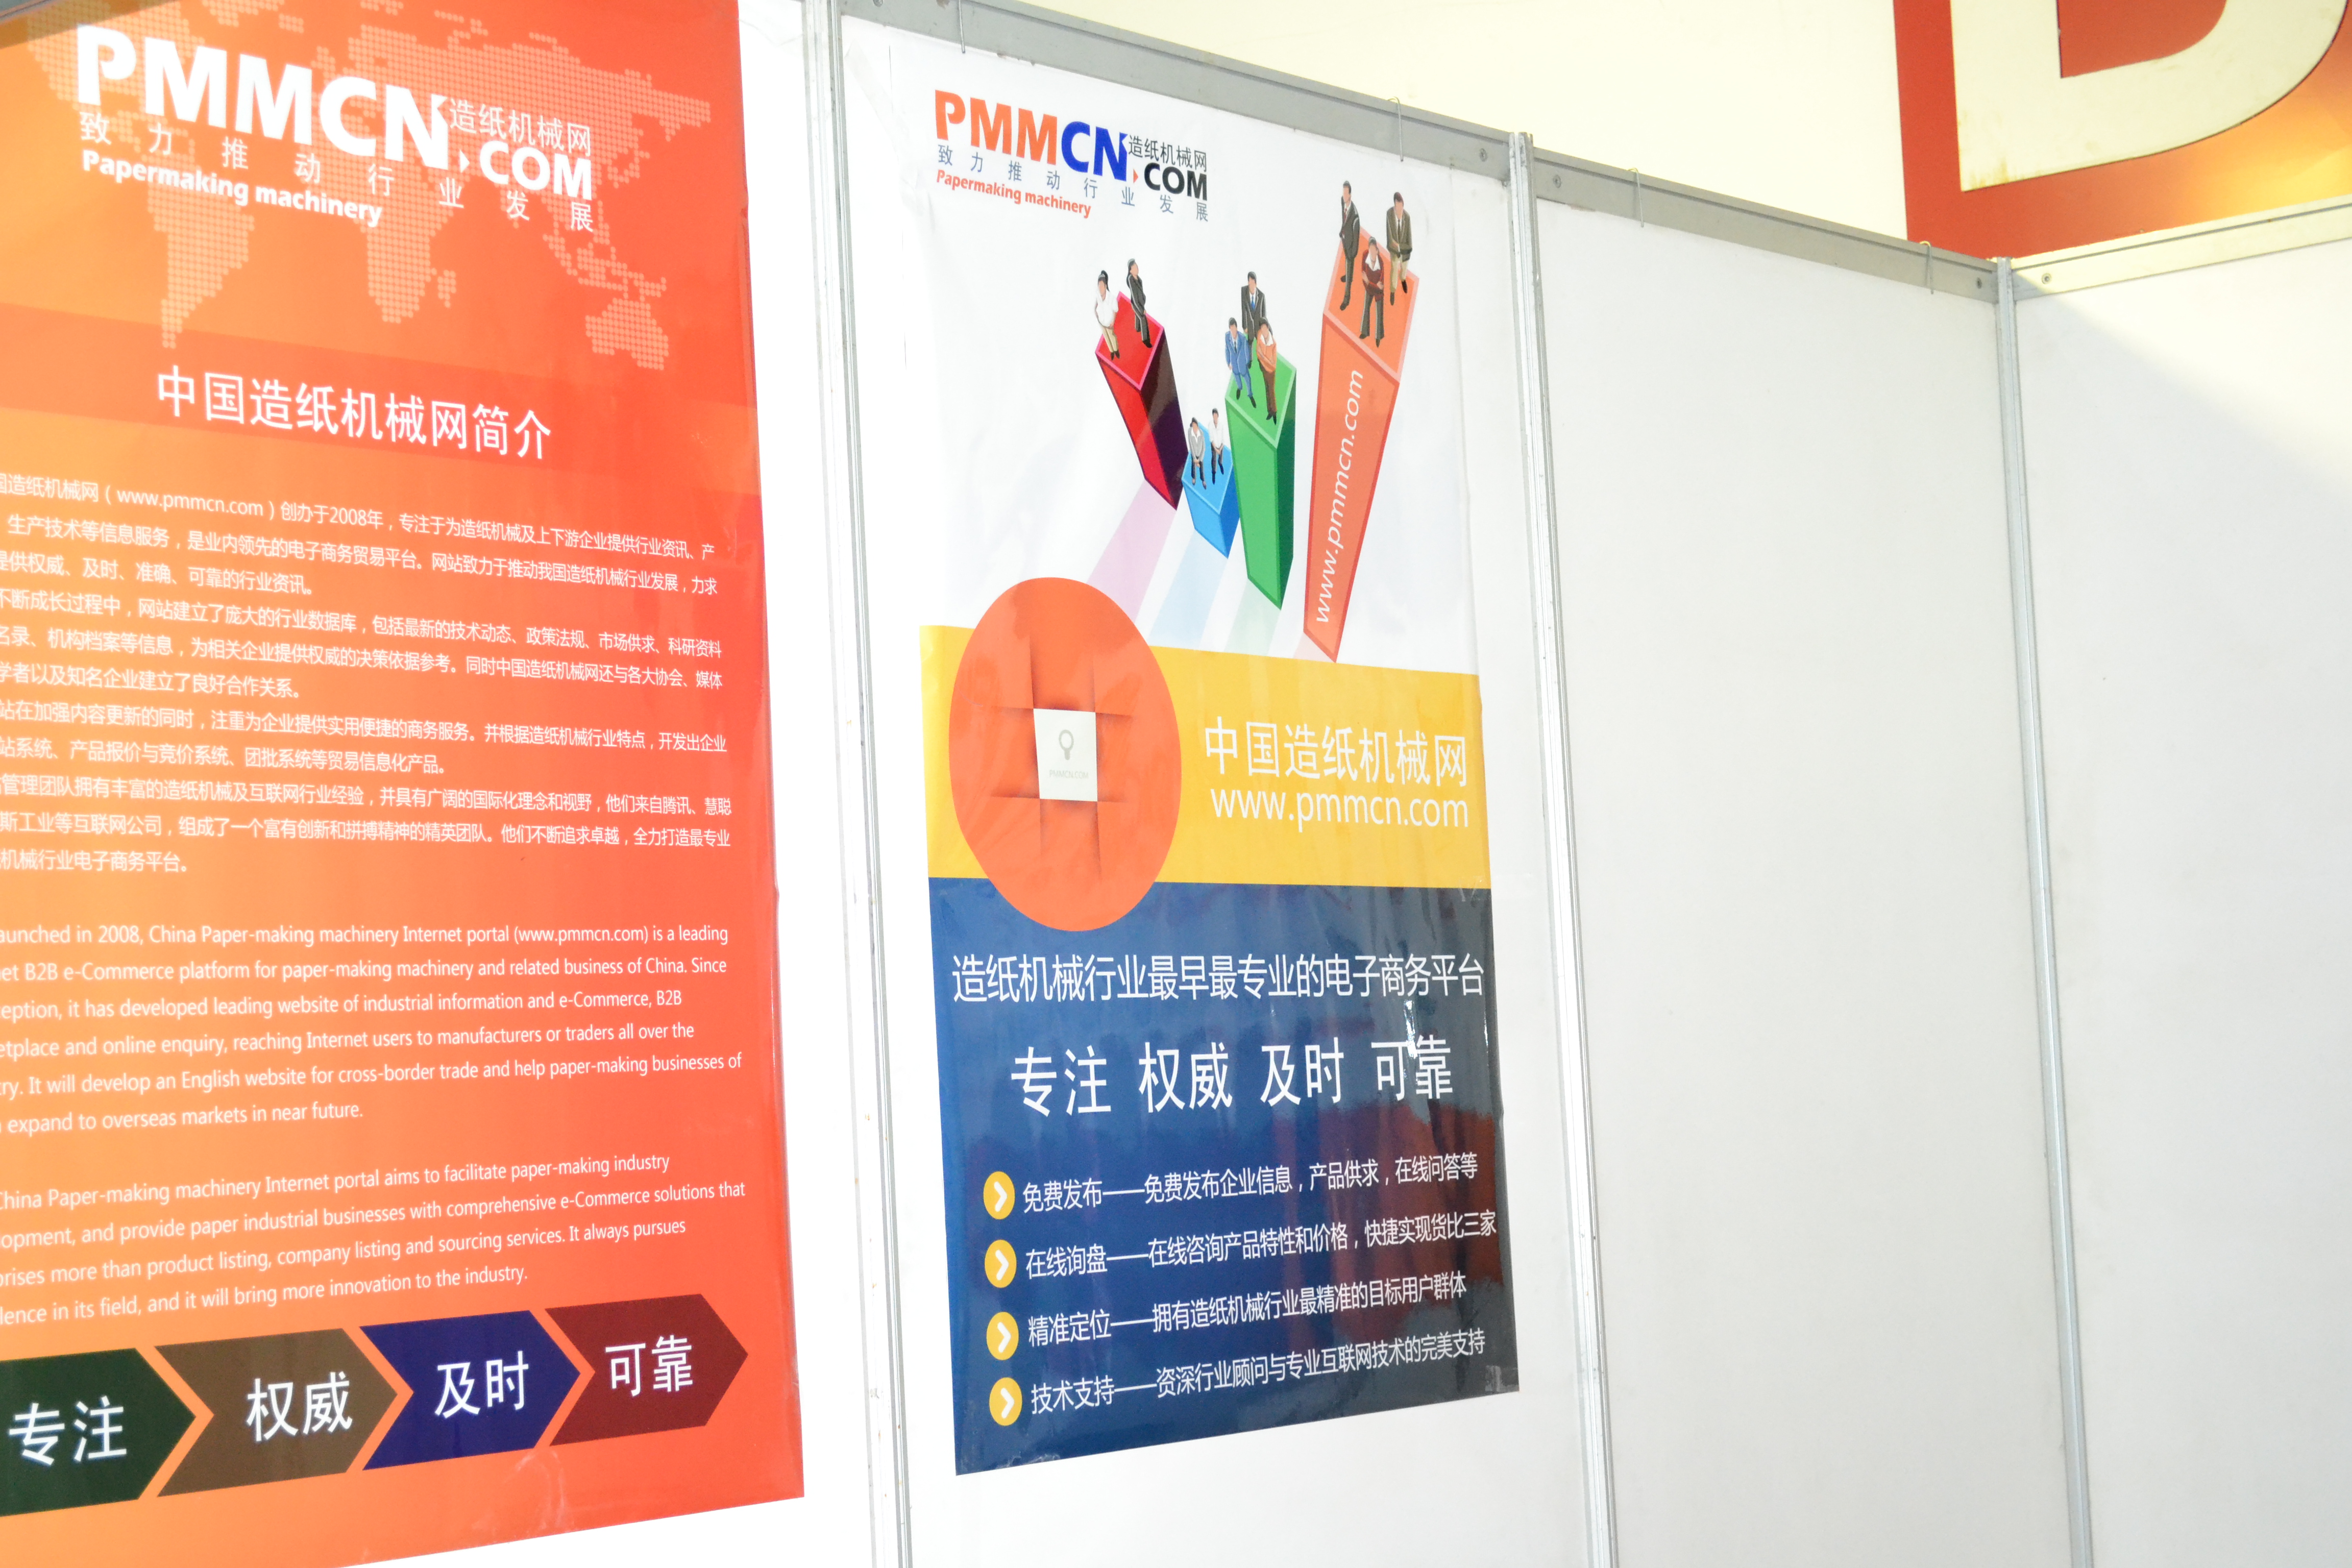 中國造紙機械網展會